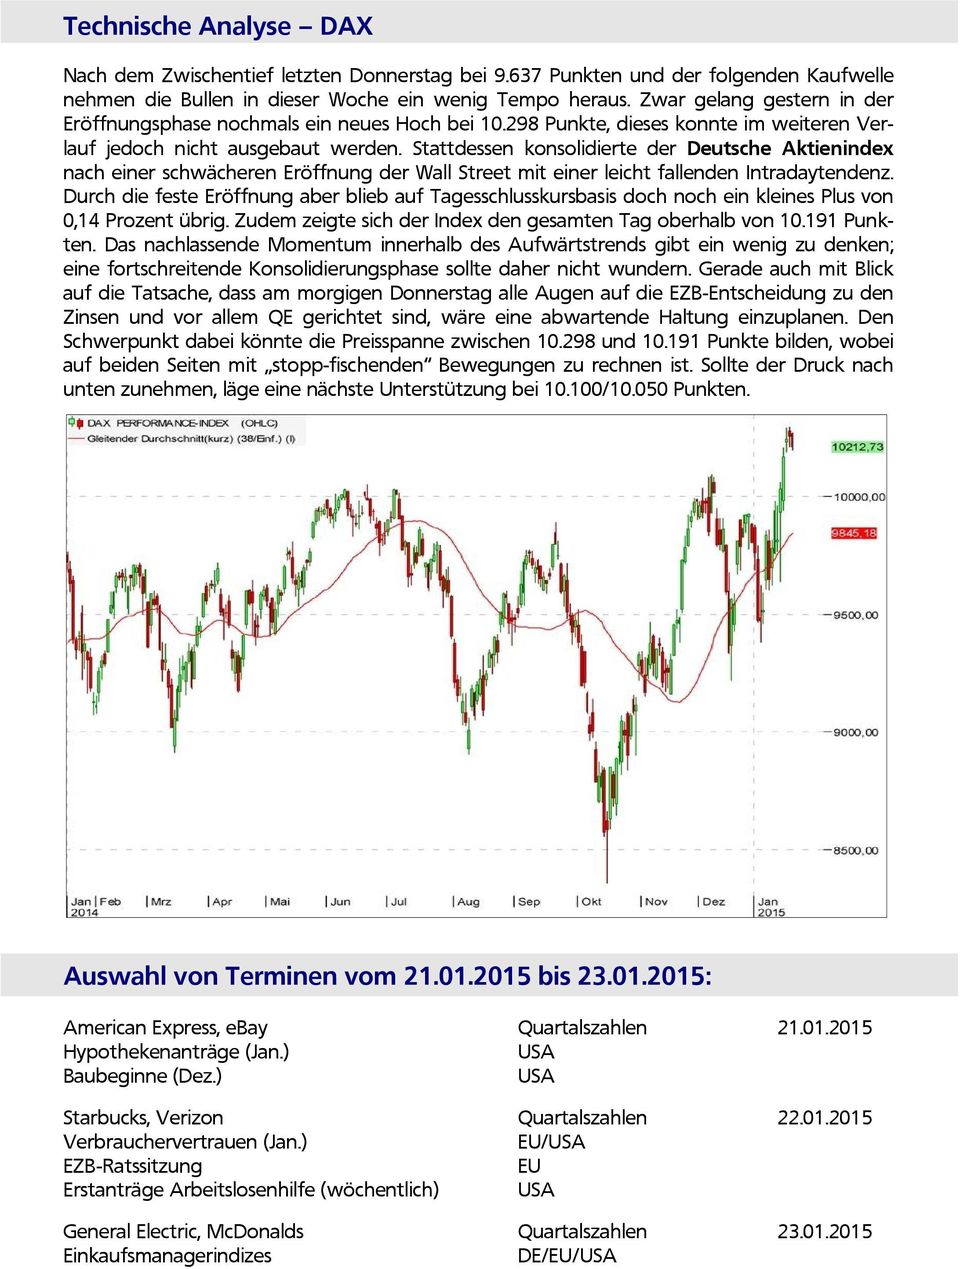 Stattdessen konsolidierte der Deutsche Aktienindex nach einer schwächeren Eröffnung der Wall Street mit einer leicht fallenden Intradaytendenz.